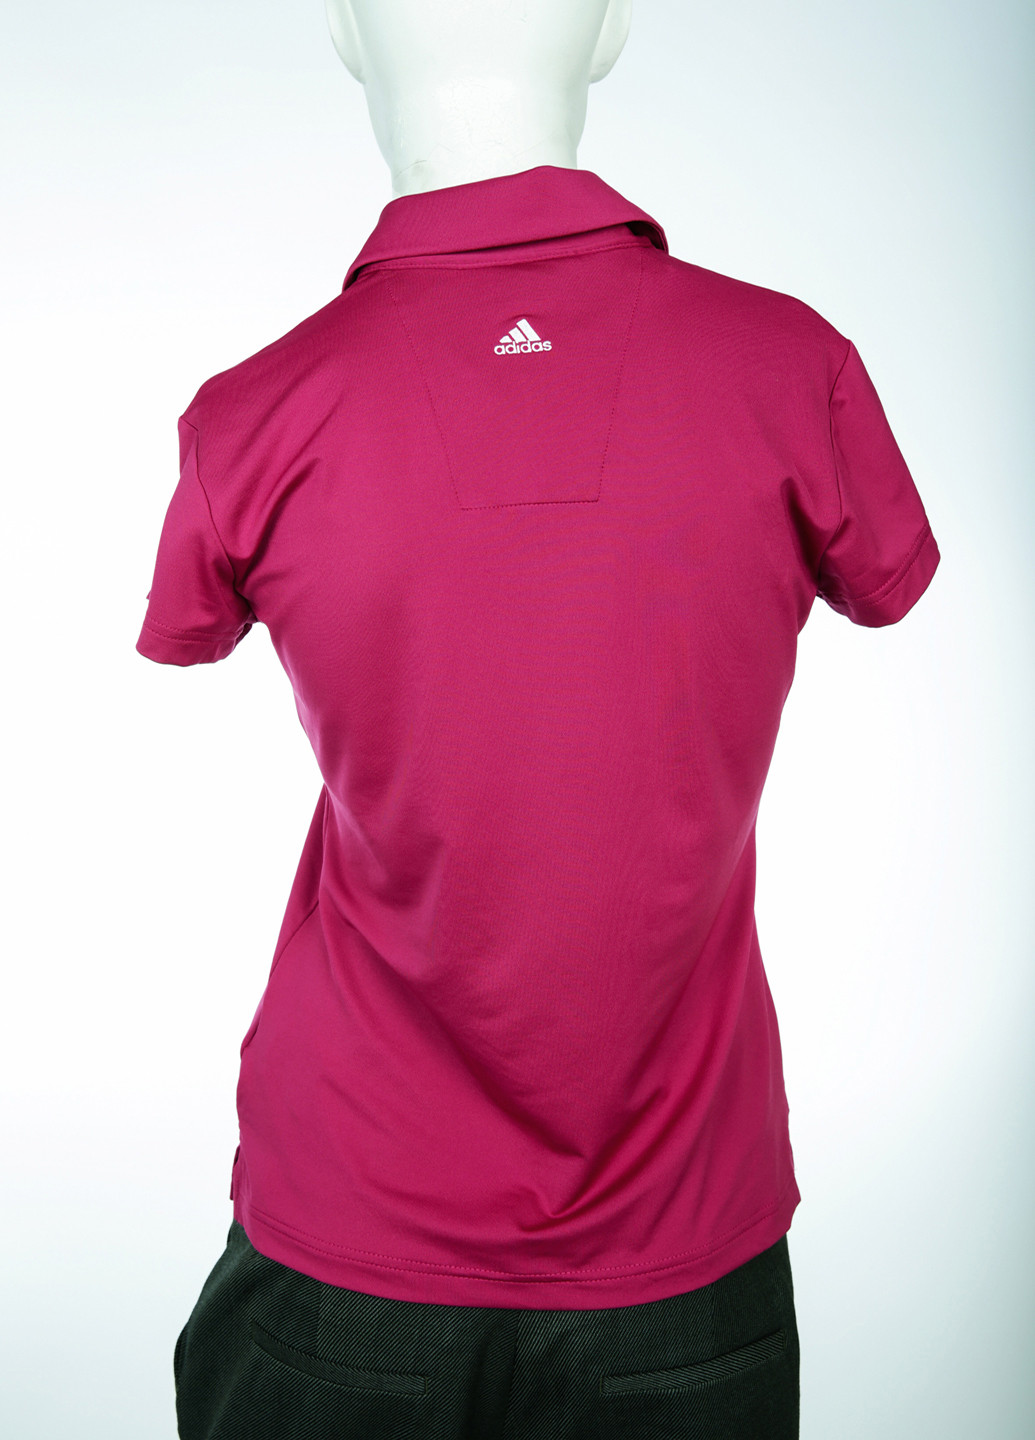 Фуксиновая (цвета Фуксия) женская футболка-поло adidas с надписью